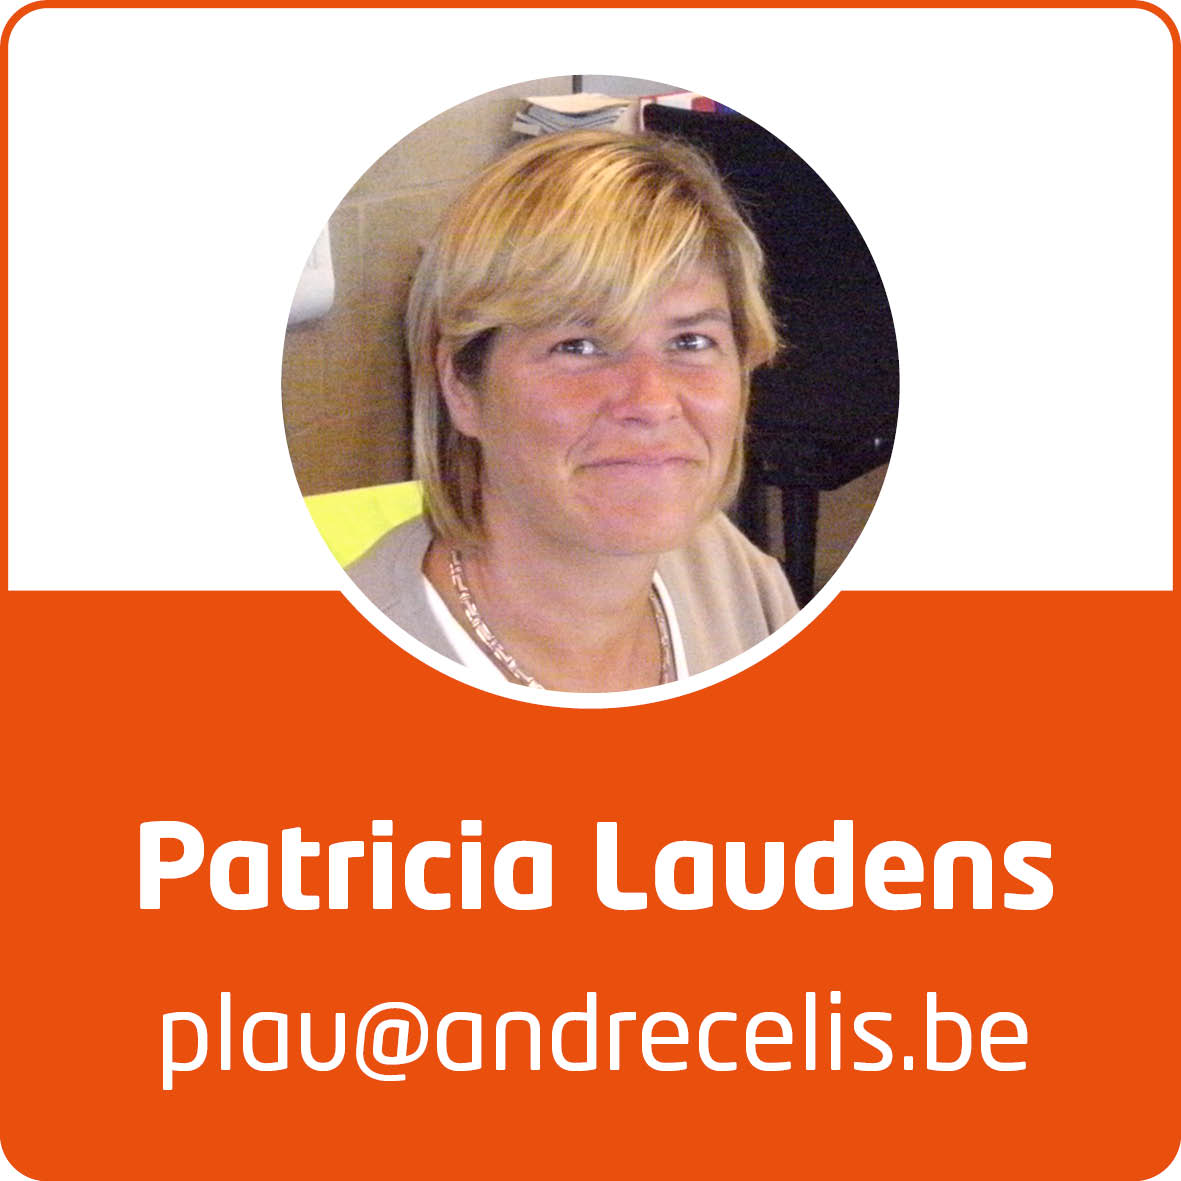 Patricia-Laudens